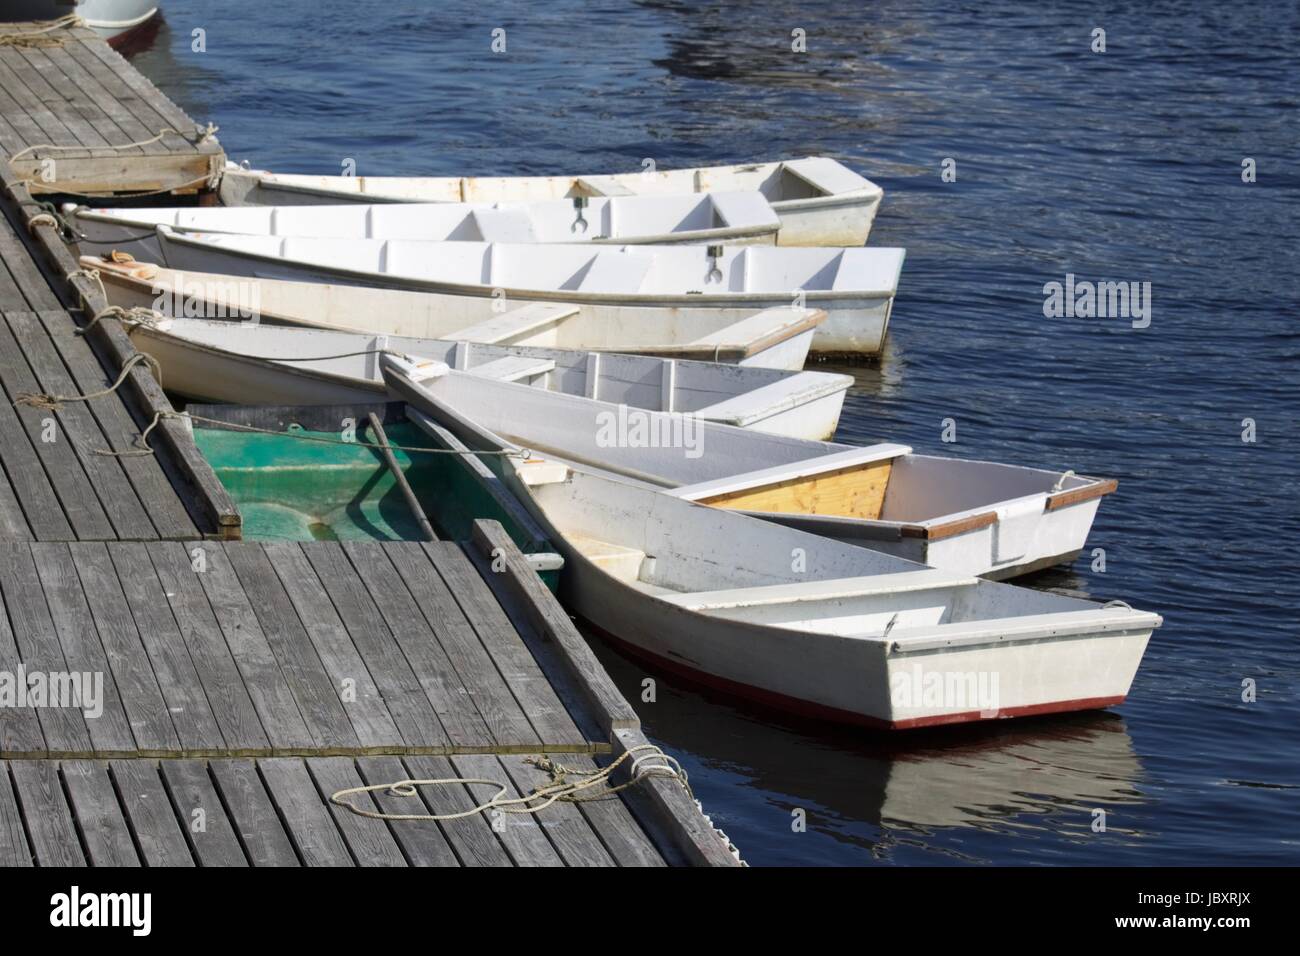 Doris liée à la pêche à la jetée de Perkins Cove, Ogunquit, Maine. Ces petits bateaux sont utilisés par les pêcheurs de homard et de leurs bateaux. Banque D'Images